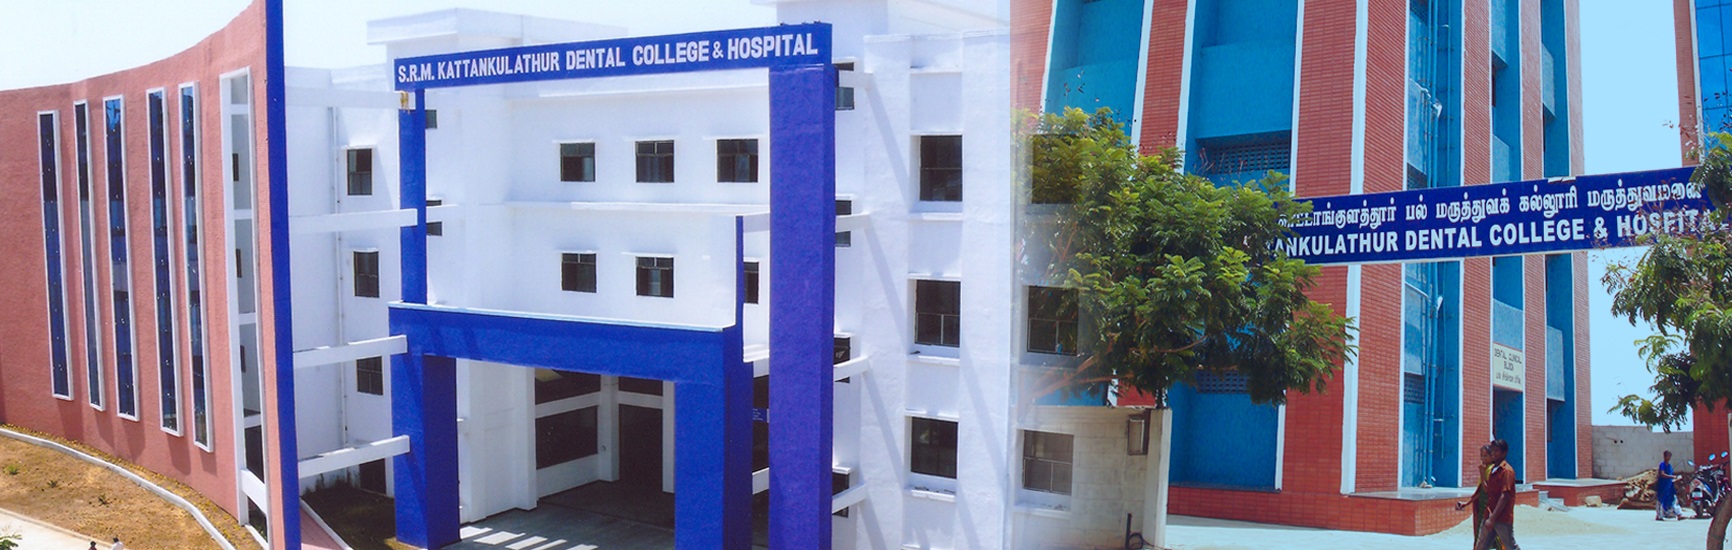 SRM Kattankulathur Dental College and Hospital, Kanchipuram Image